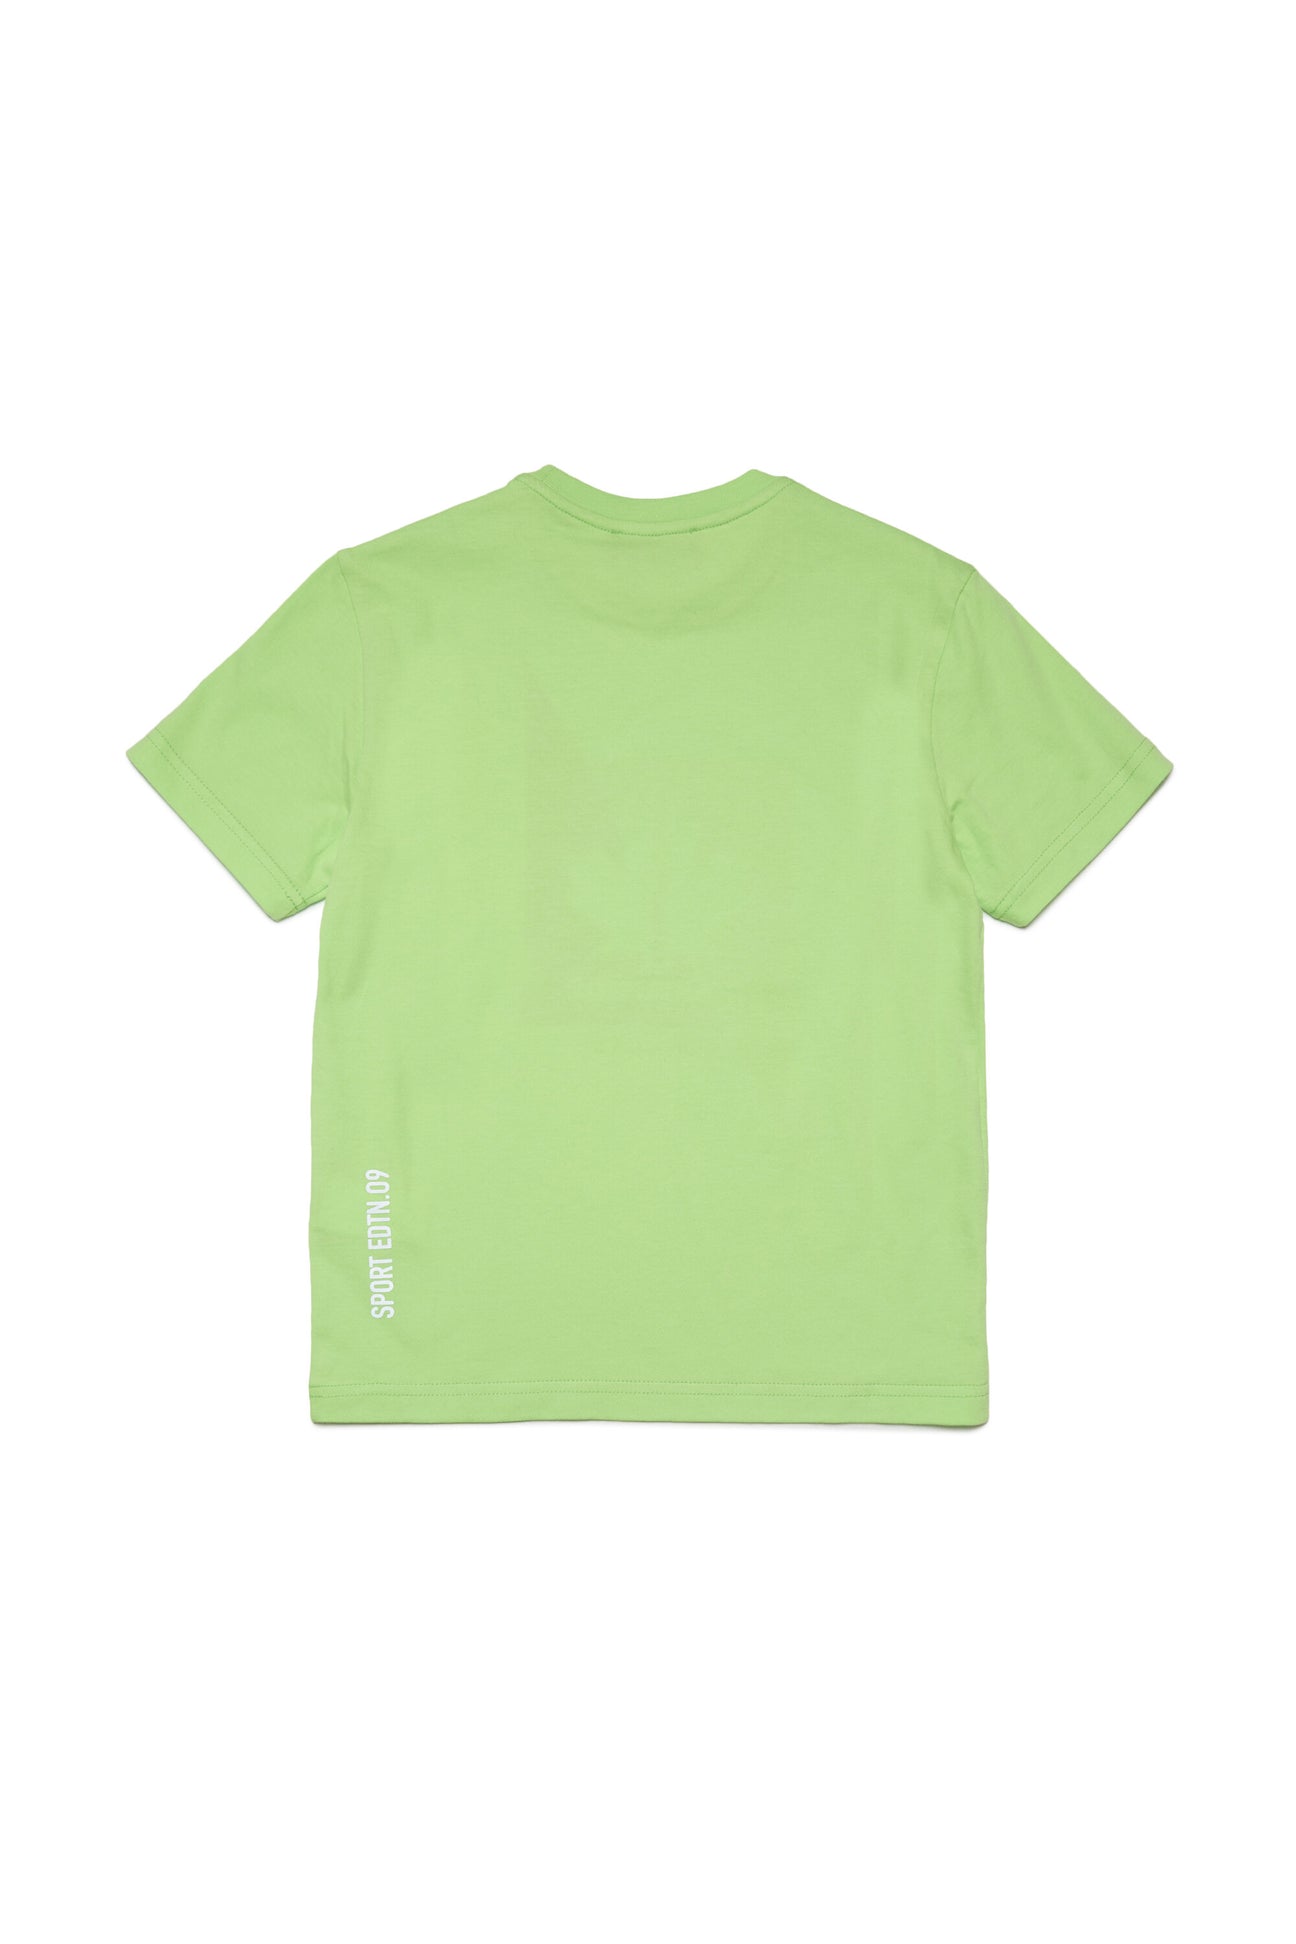 Camiseta con gráficos Leaf en dos colores Camiseta con gráficos Leaf en dos colores